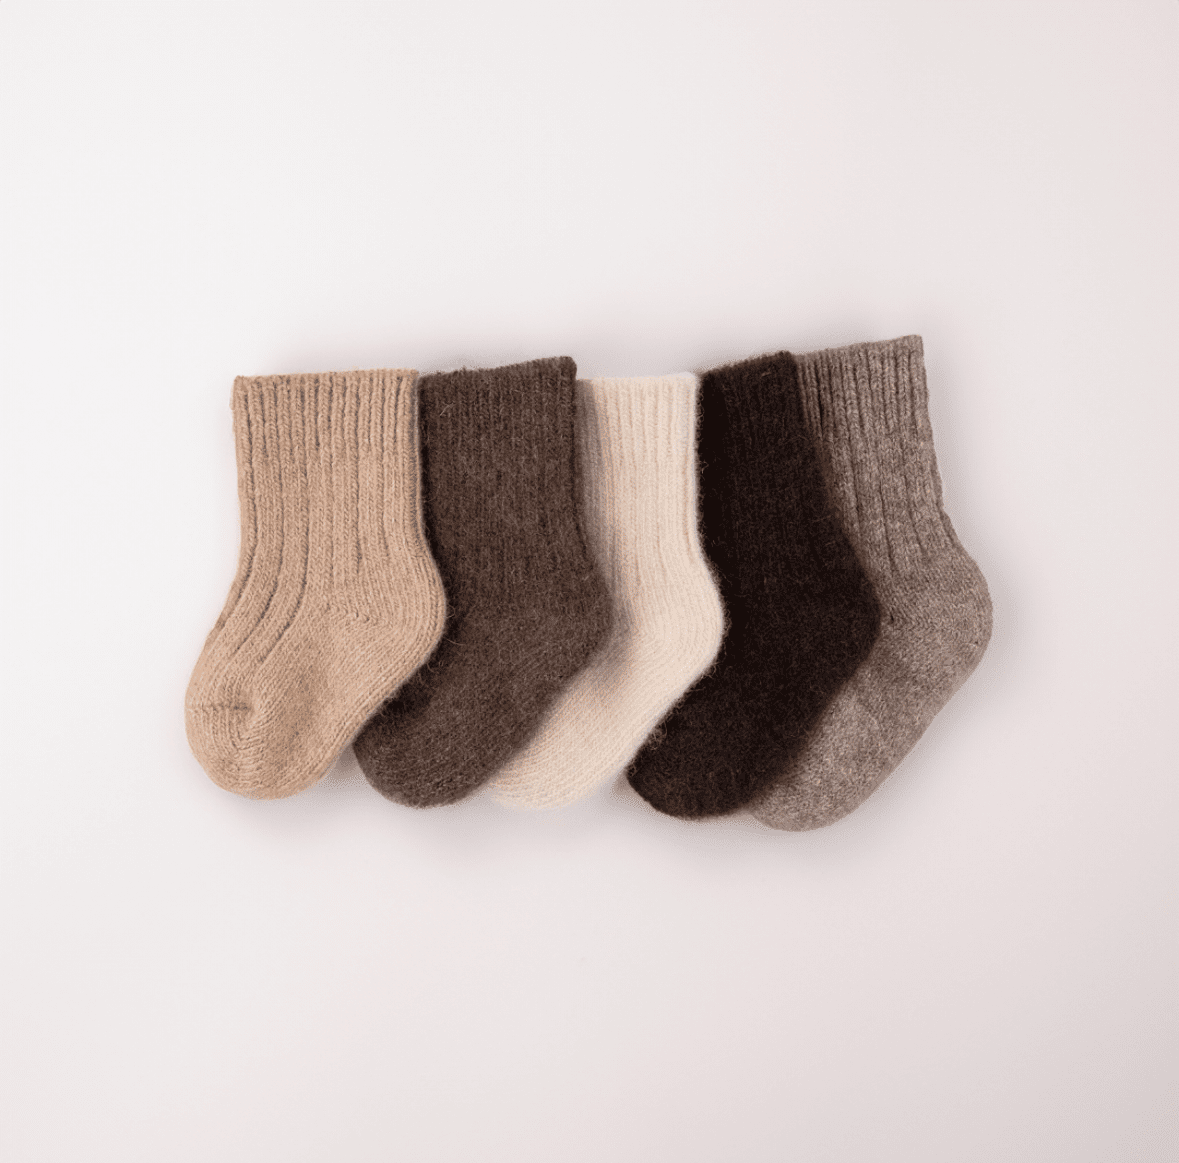 Socken in verschiedenen Farben aus Schafswolle